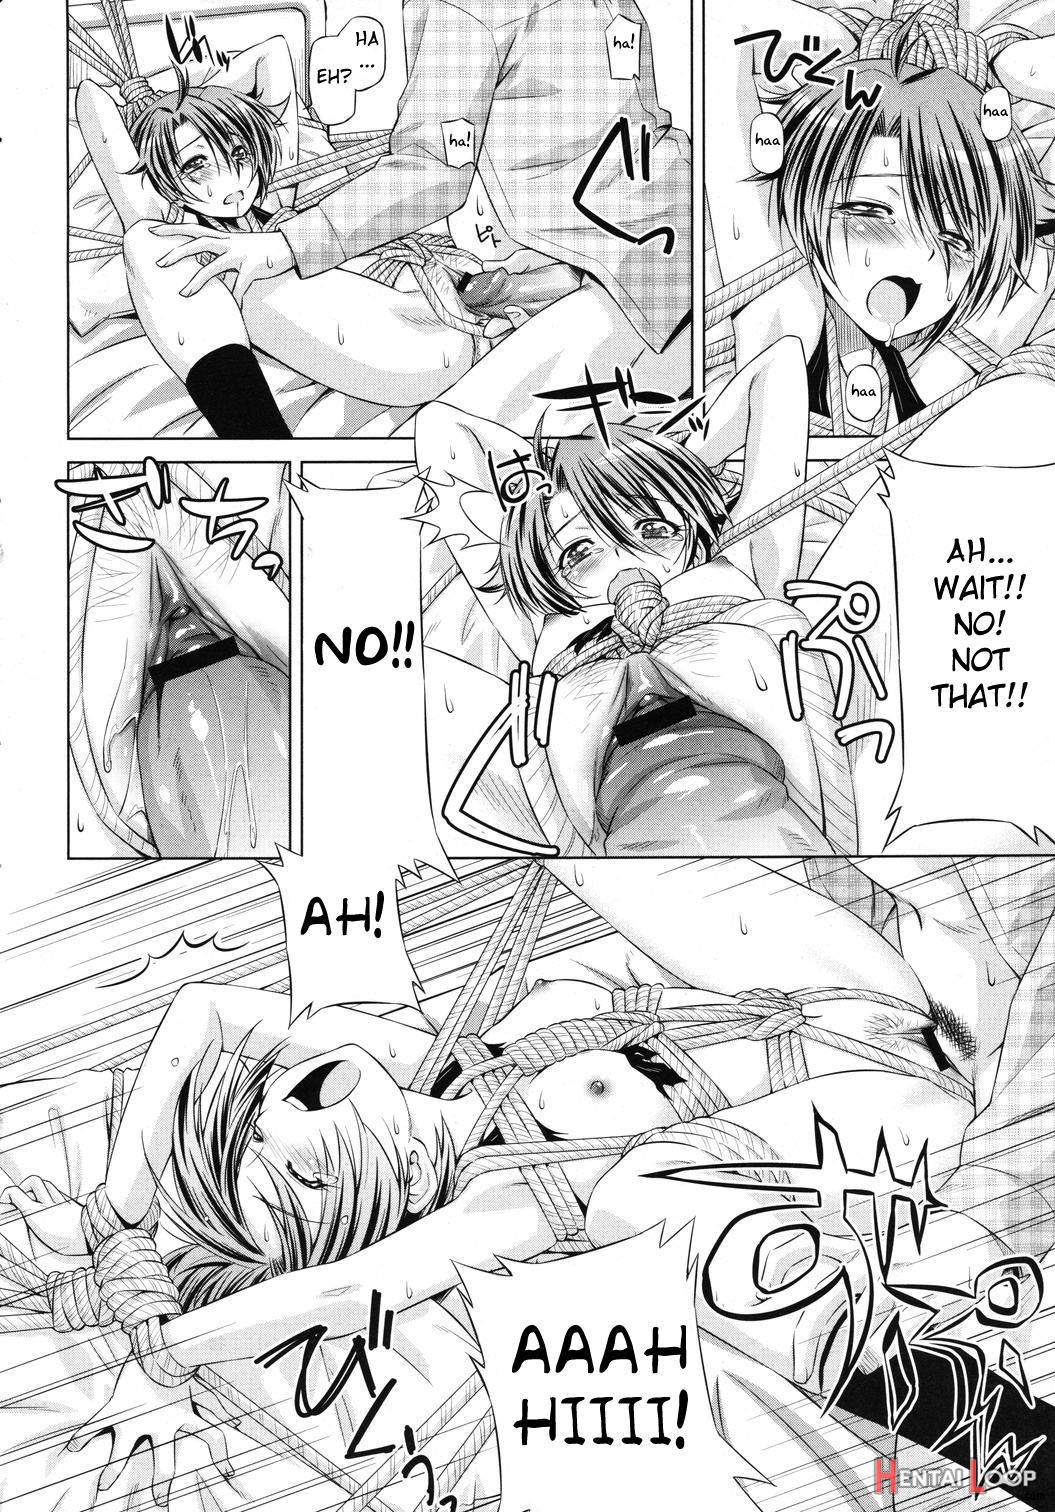 Rukino Versus Kei-niichan page 16